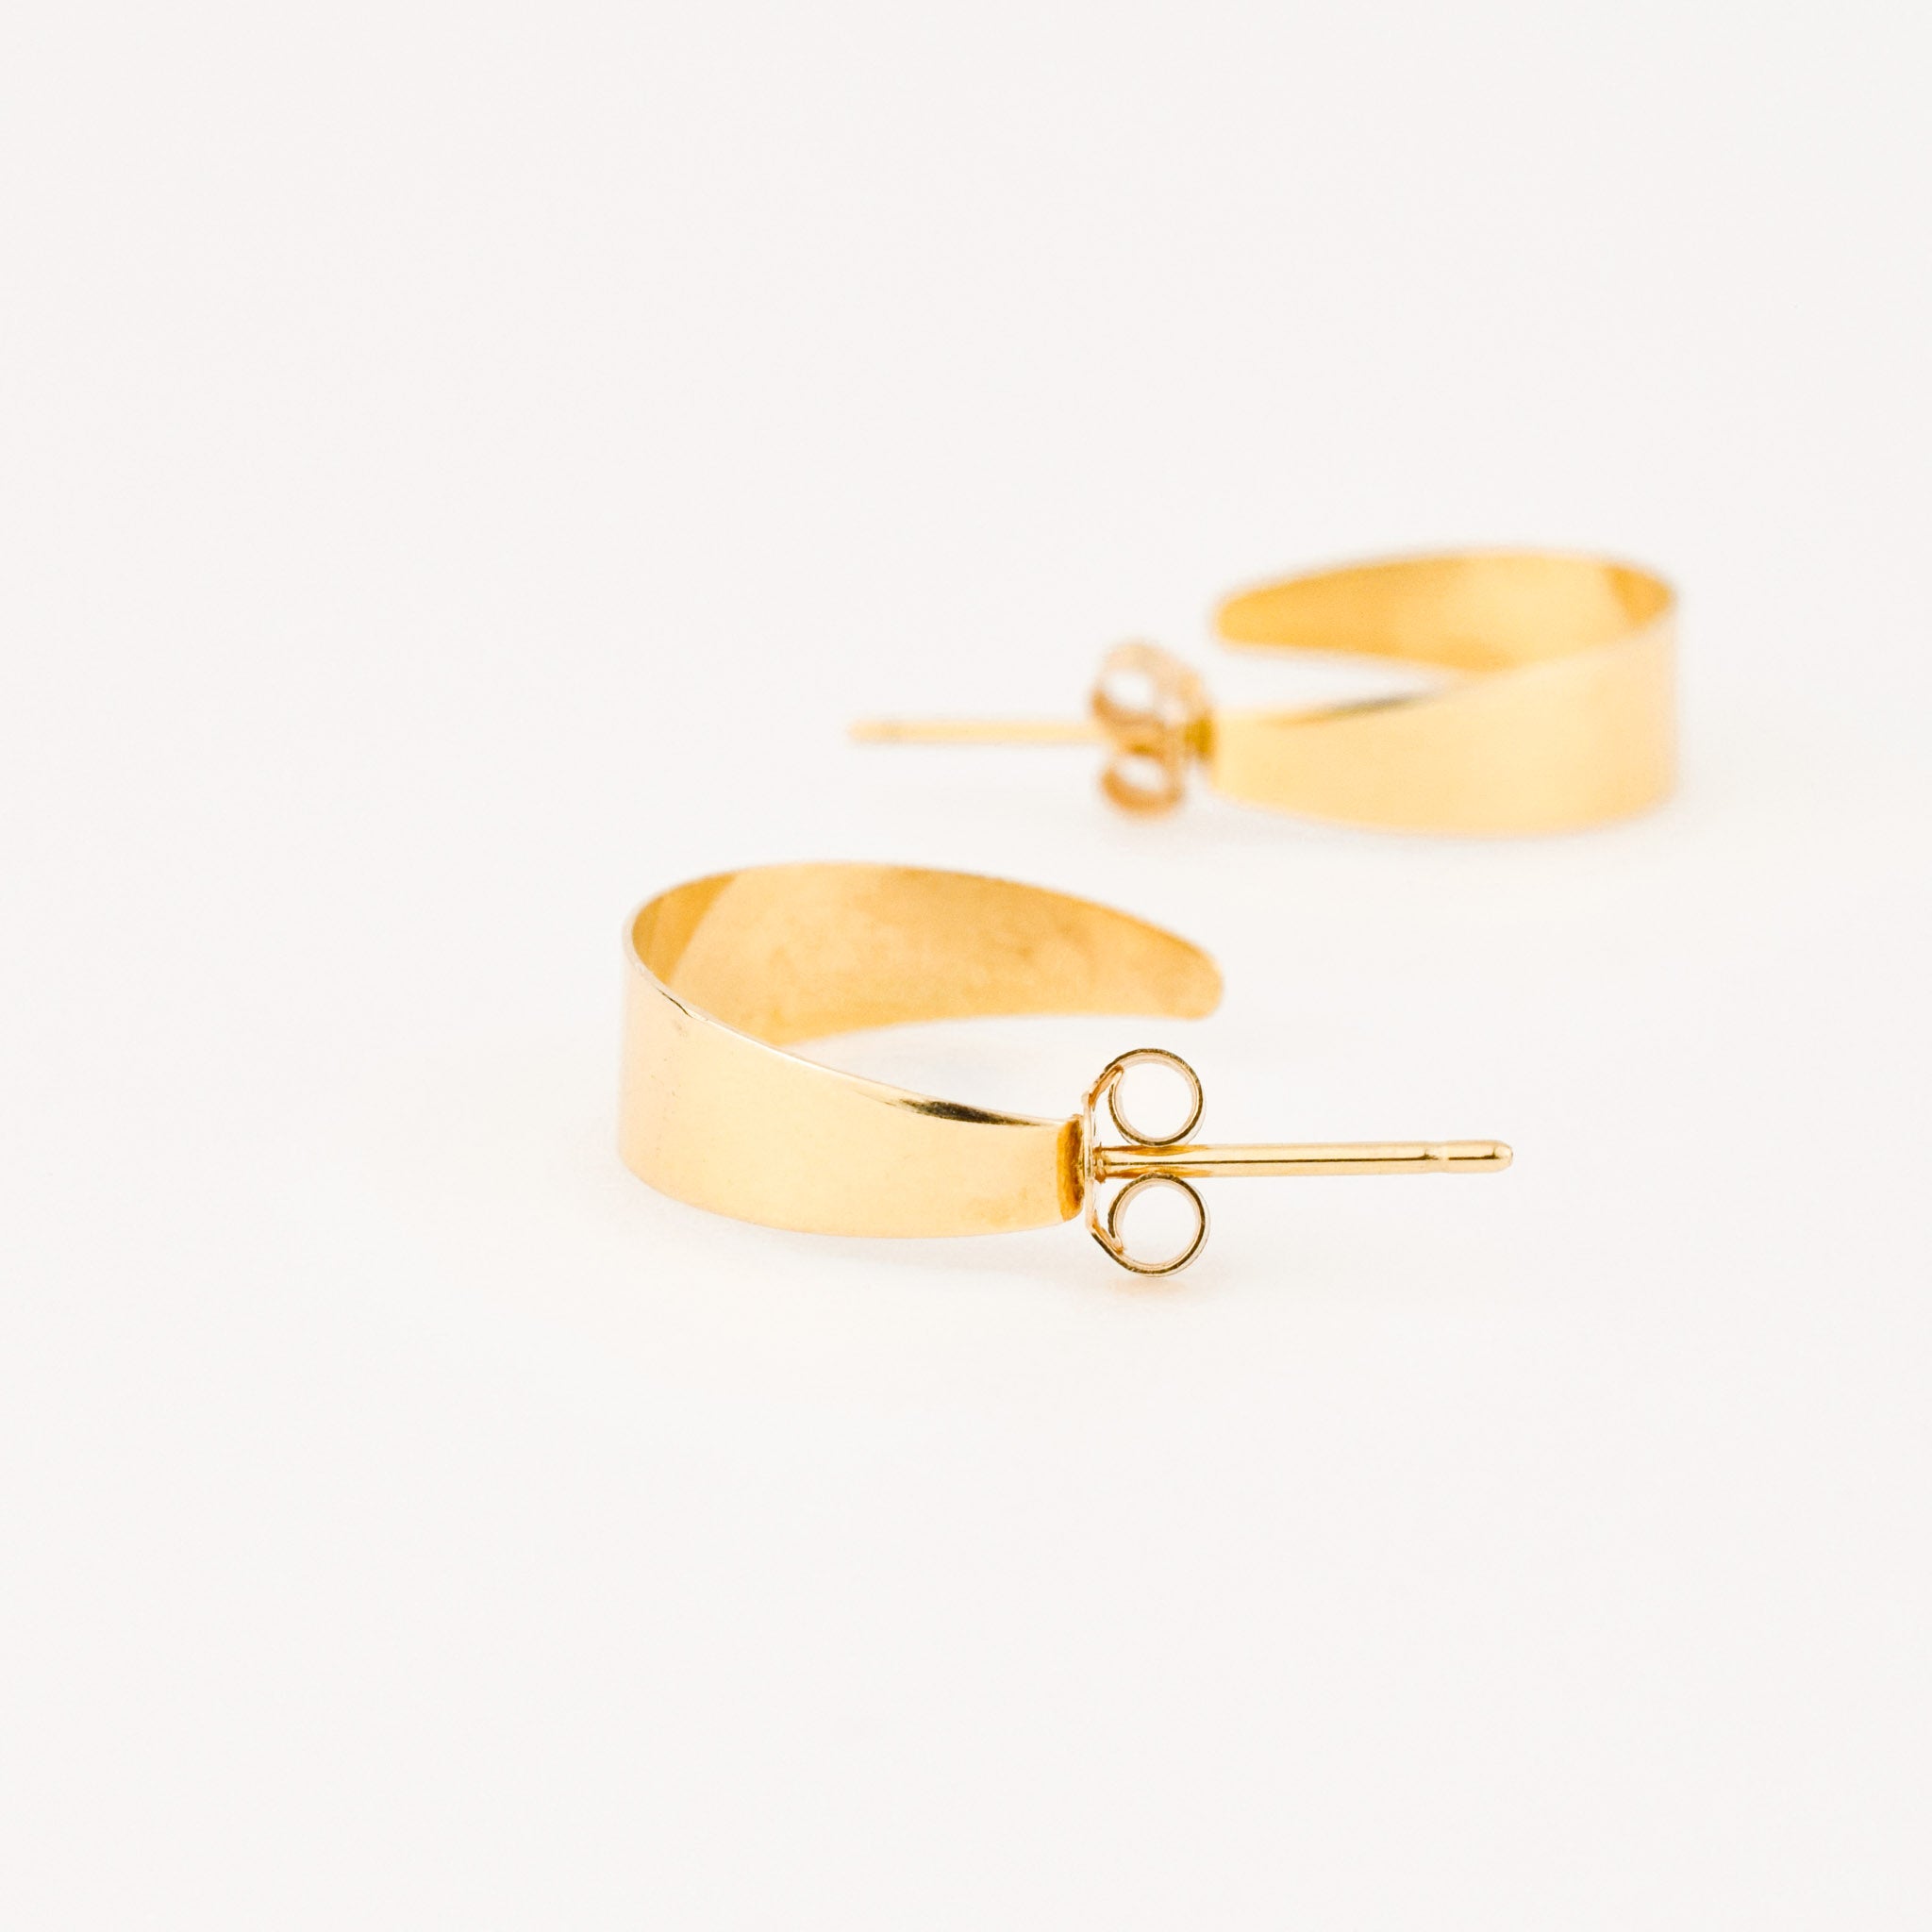 vintage gold sleek hoop earrings 